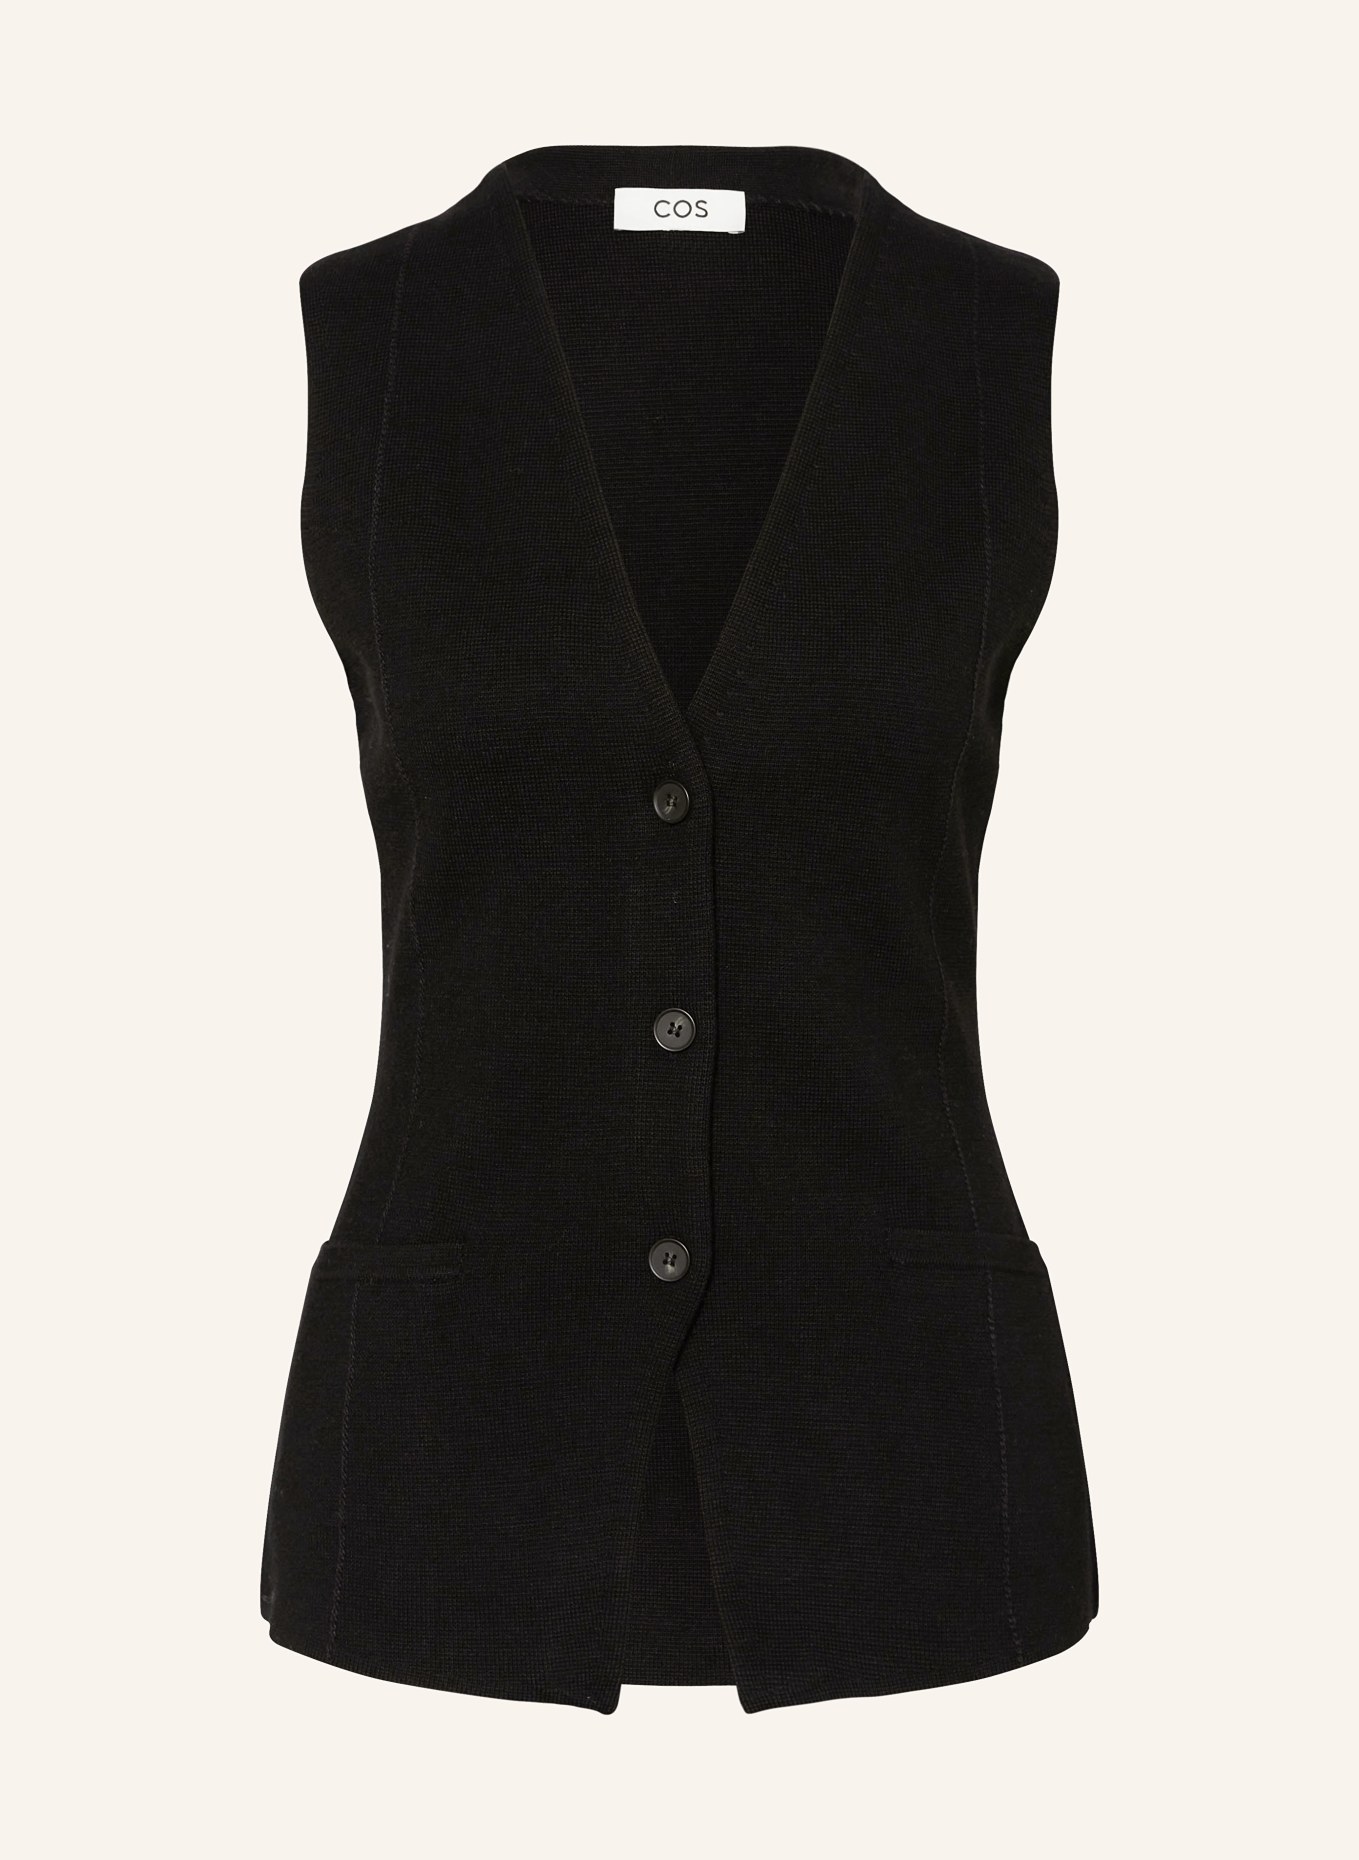 COS Knit vest, Color: BLACK (Image 1)